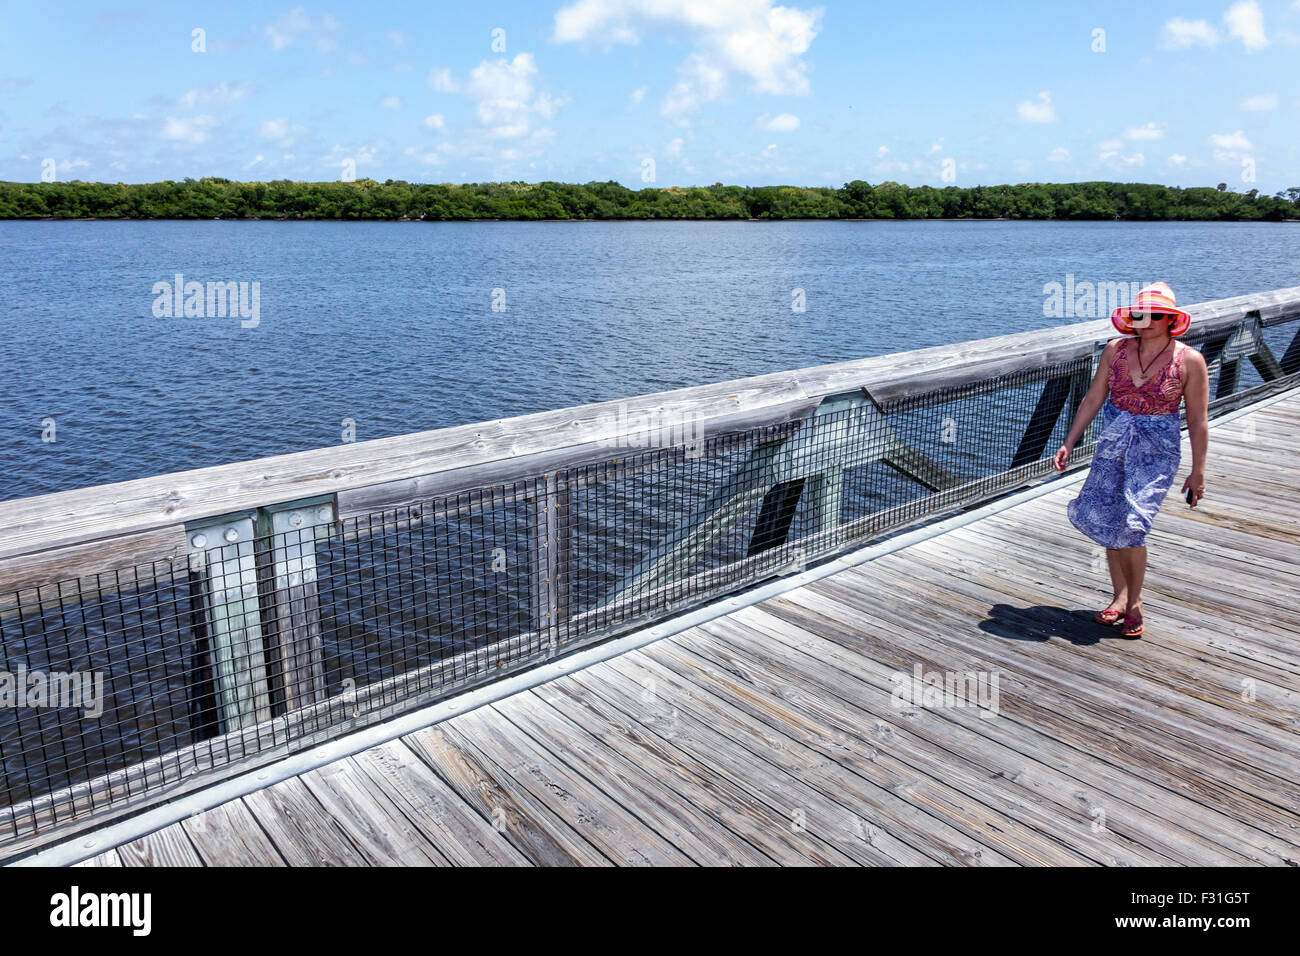 Florida North Palm Beach, John D. MacArthur Beach state Park, passeggiata sul lungomare con la natura rialzata, Lake Worth Lagoon, adulti, donna donna donna donna donna donna donna donna donna, passeggiate, vista Foto Stock